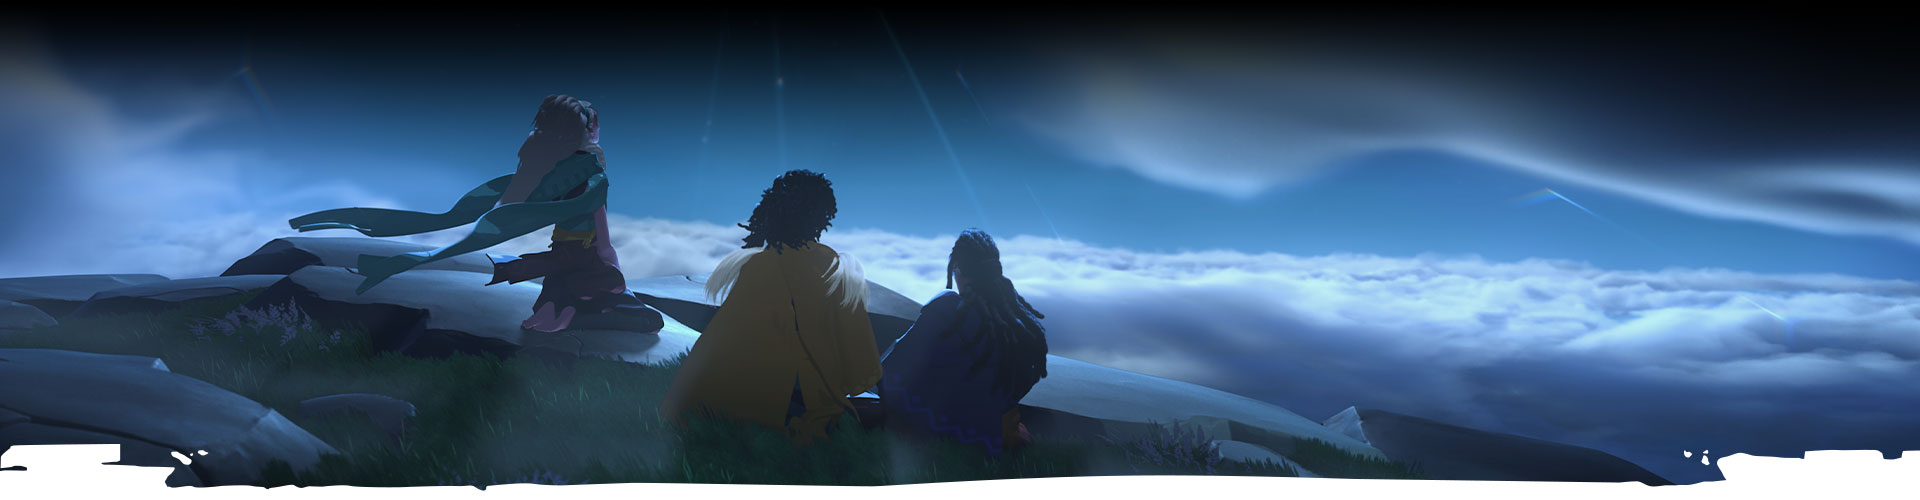 三個角色仰視著夜空。 